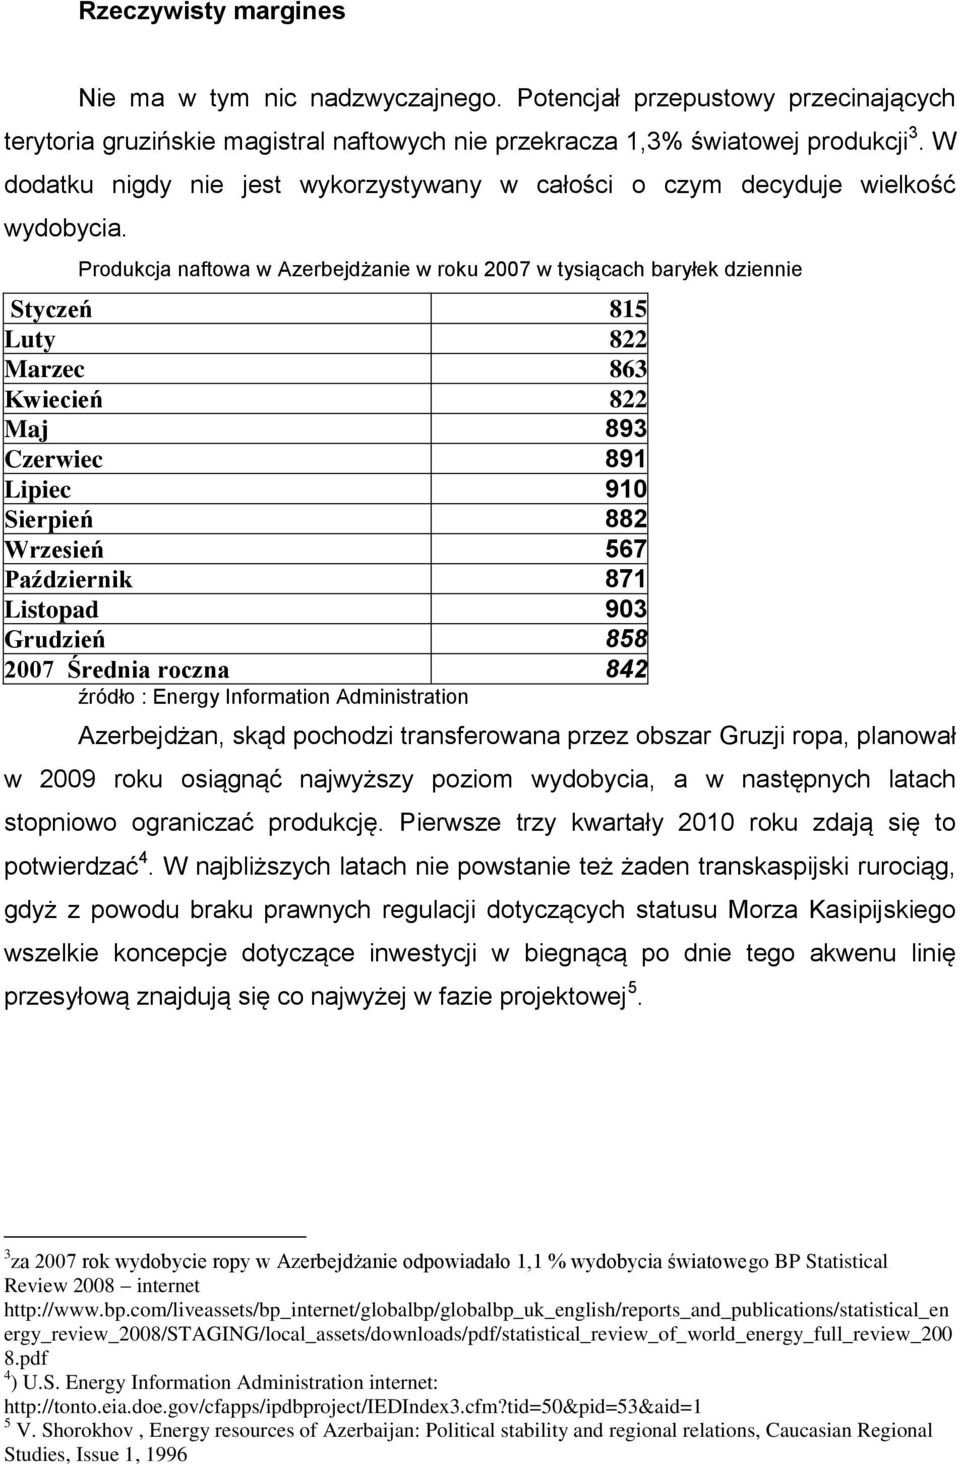 Produkcja naftowa w Azerbejdżanie w roku 2007 w tysiącach baryłek dziennie Styczeń 815 Luty 822 Marzec 863 Kwiecień 822 Maj 893 Czerwiec 891 Lipiec 910 Sierpień 882 Wrzesień 567 Październik 871